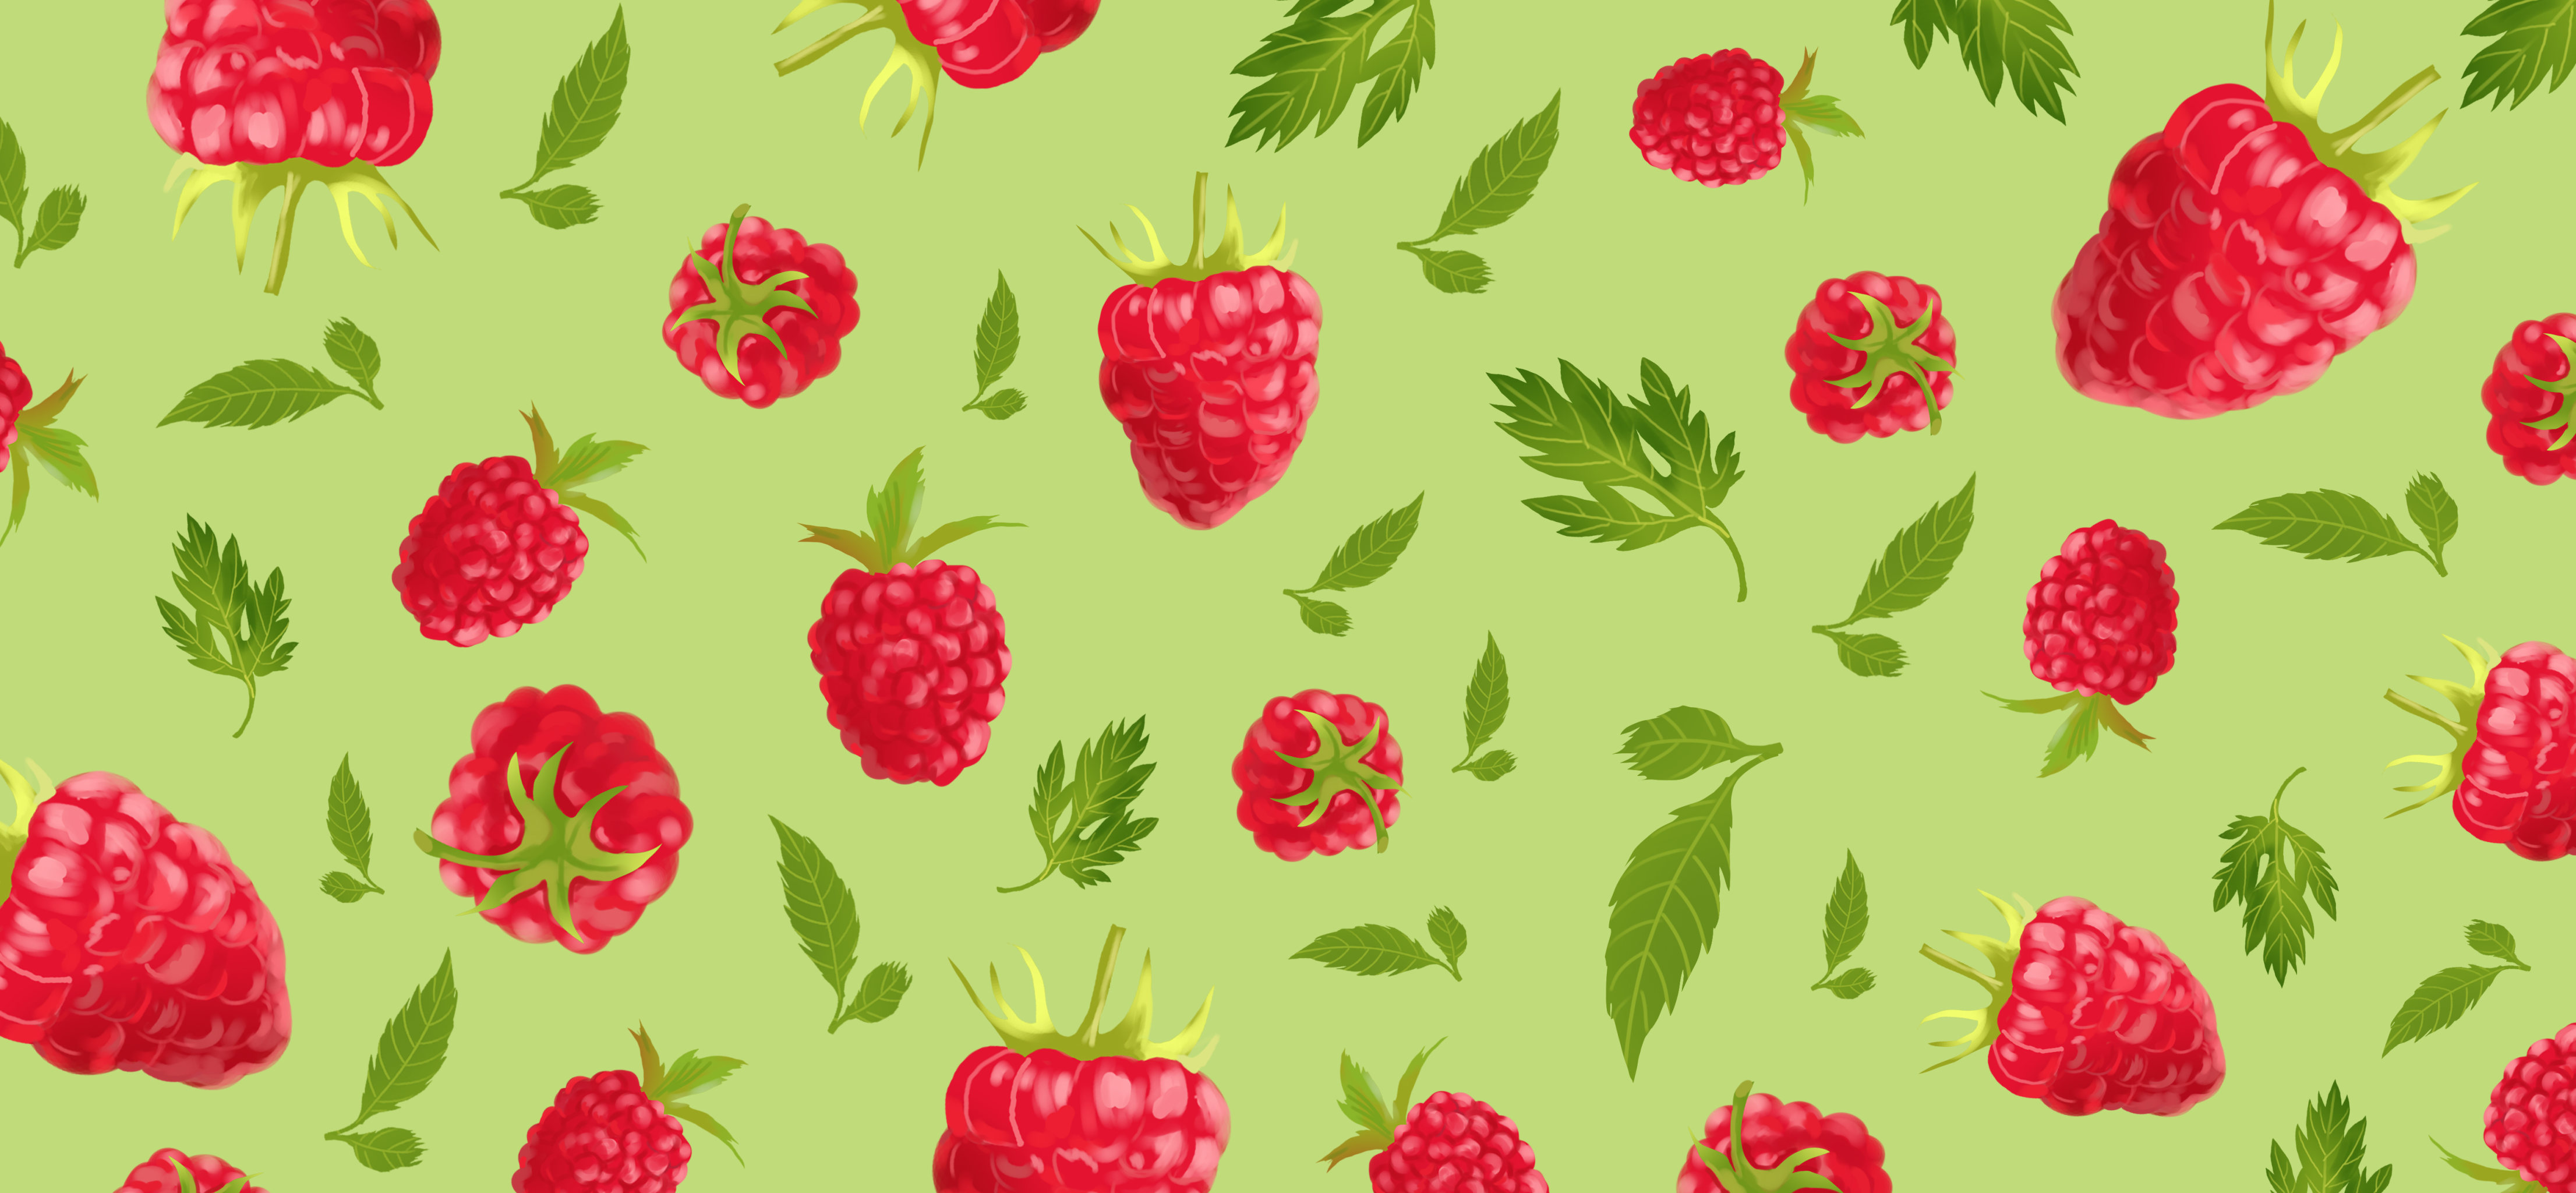 可爱小清新植物水果树莓野草莓壁纸贴纸服装图案包装插画